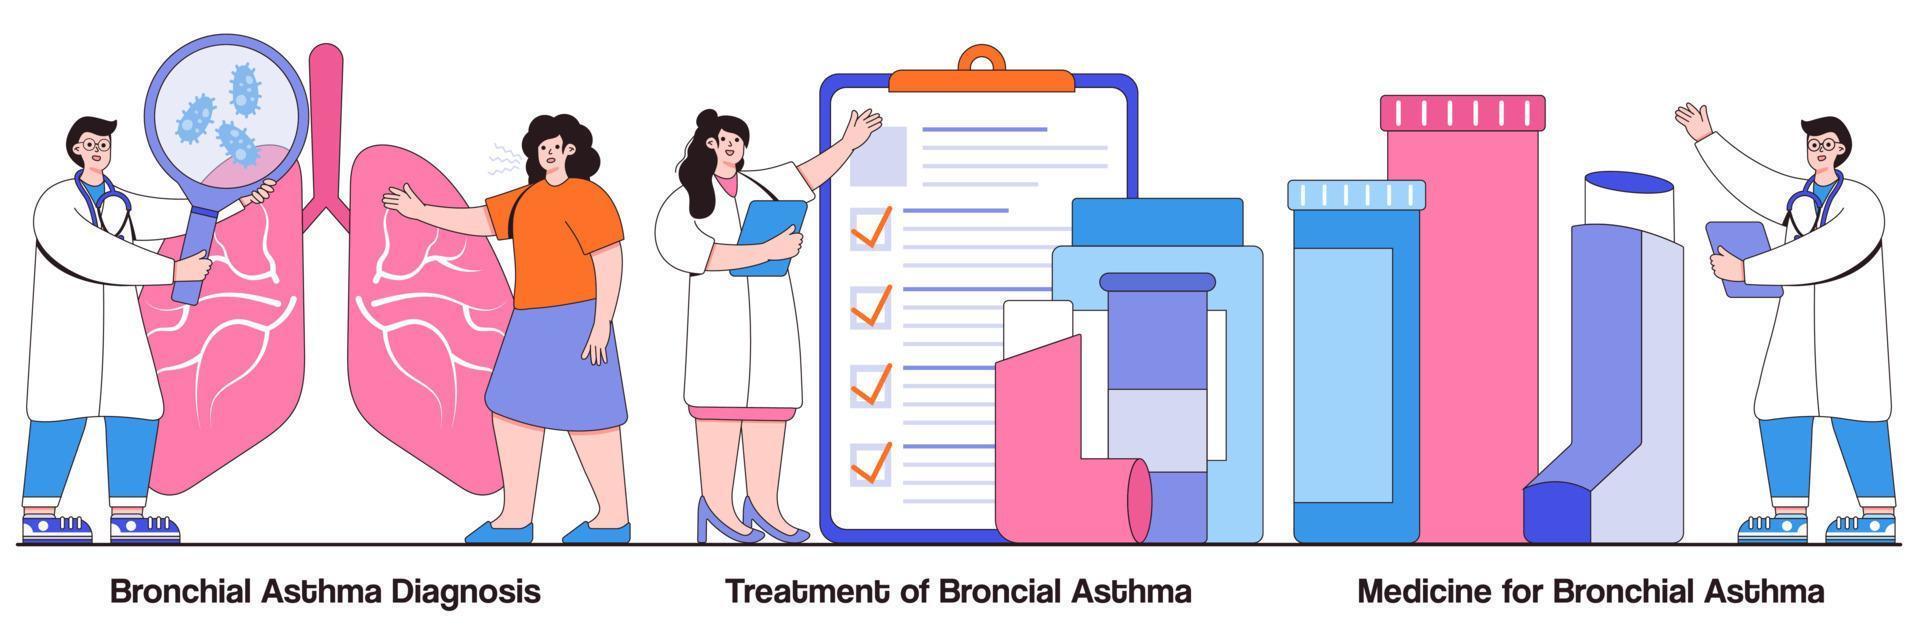 bronchiale astma diagnose, behandeling en geneeskunde concept met kleine mensen. ademhalingsziekte vector illustratie set. kortademigheid, ademhalingsaanval, allergiehoest, gezondheidszorgmetafoor